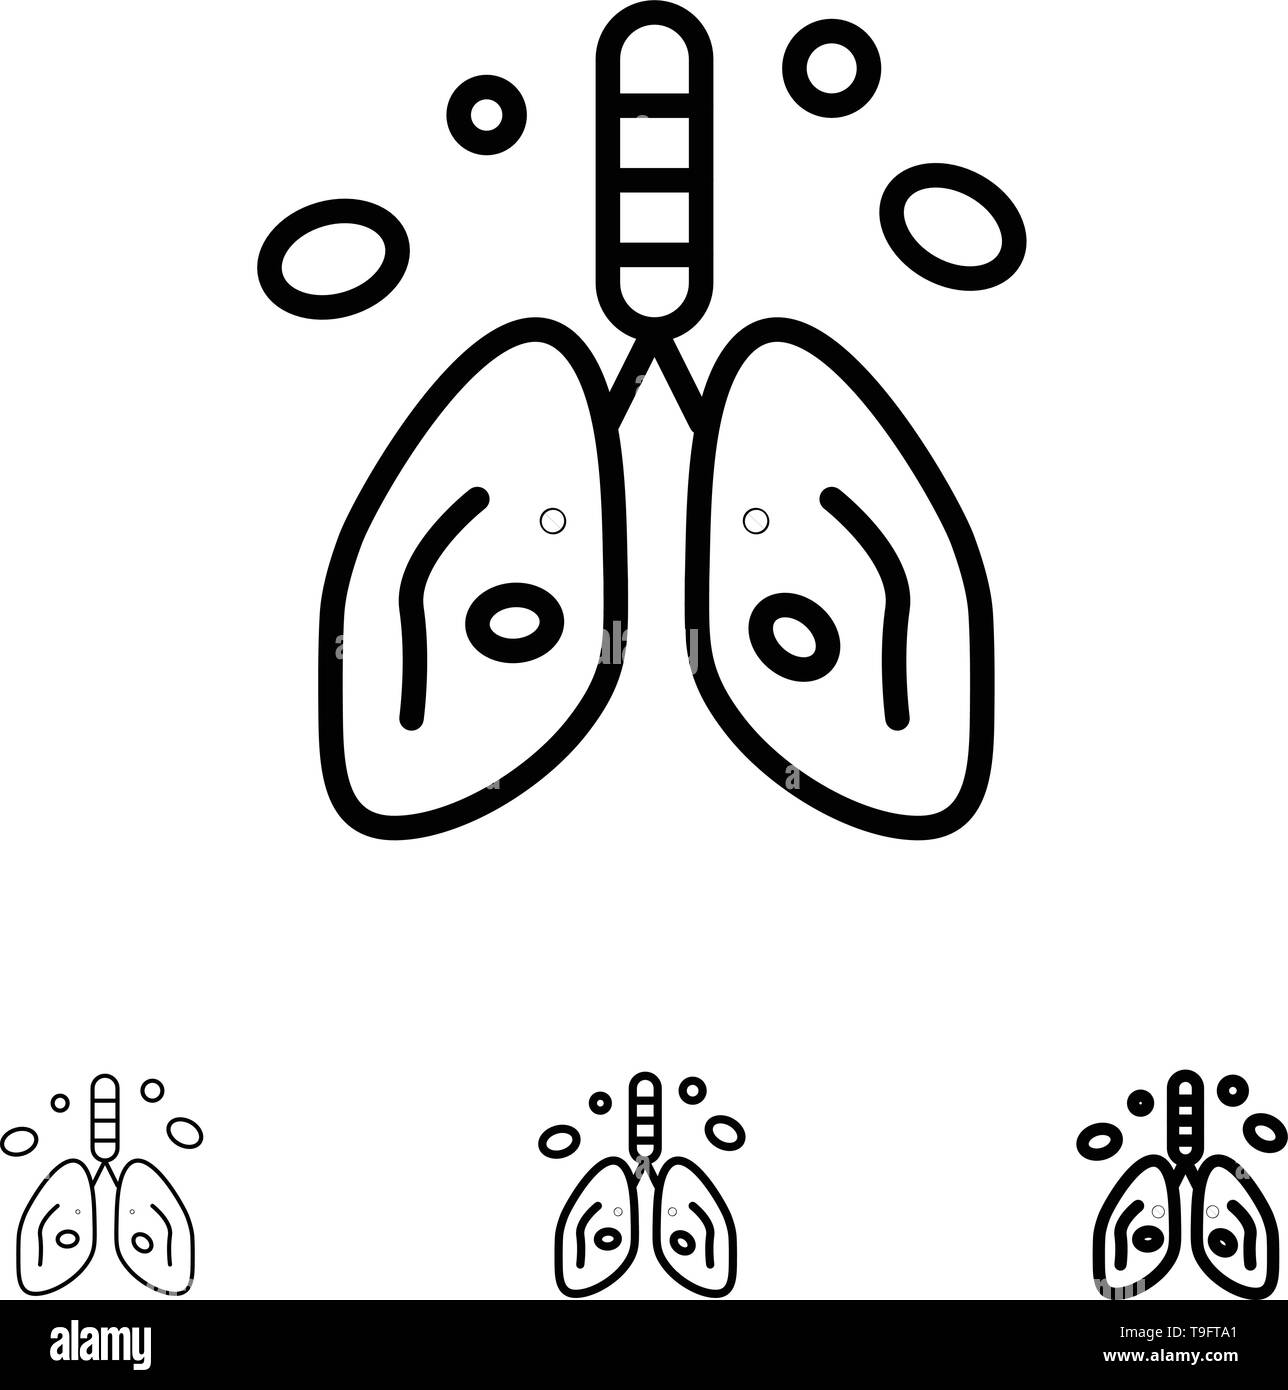 Umweltverschmutzung, Krebs-, Herz-, Lungen-, Orgel Bold und dünne schwarze Linie Icon Set Stock Vektor